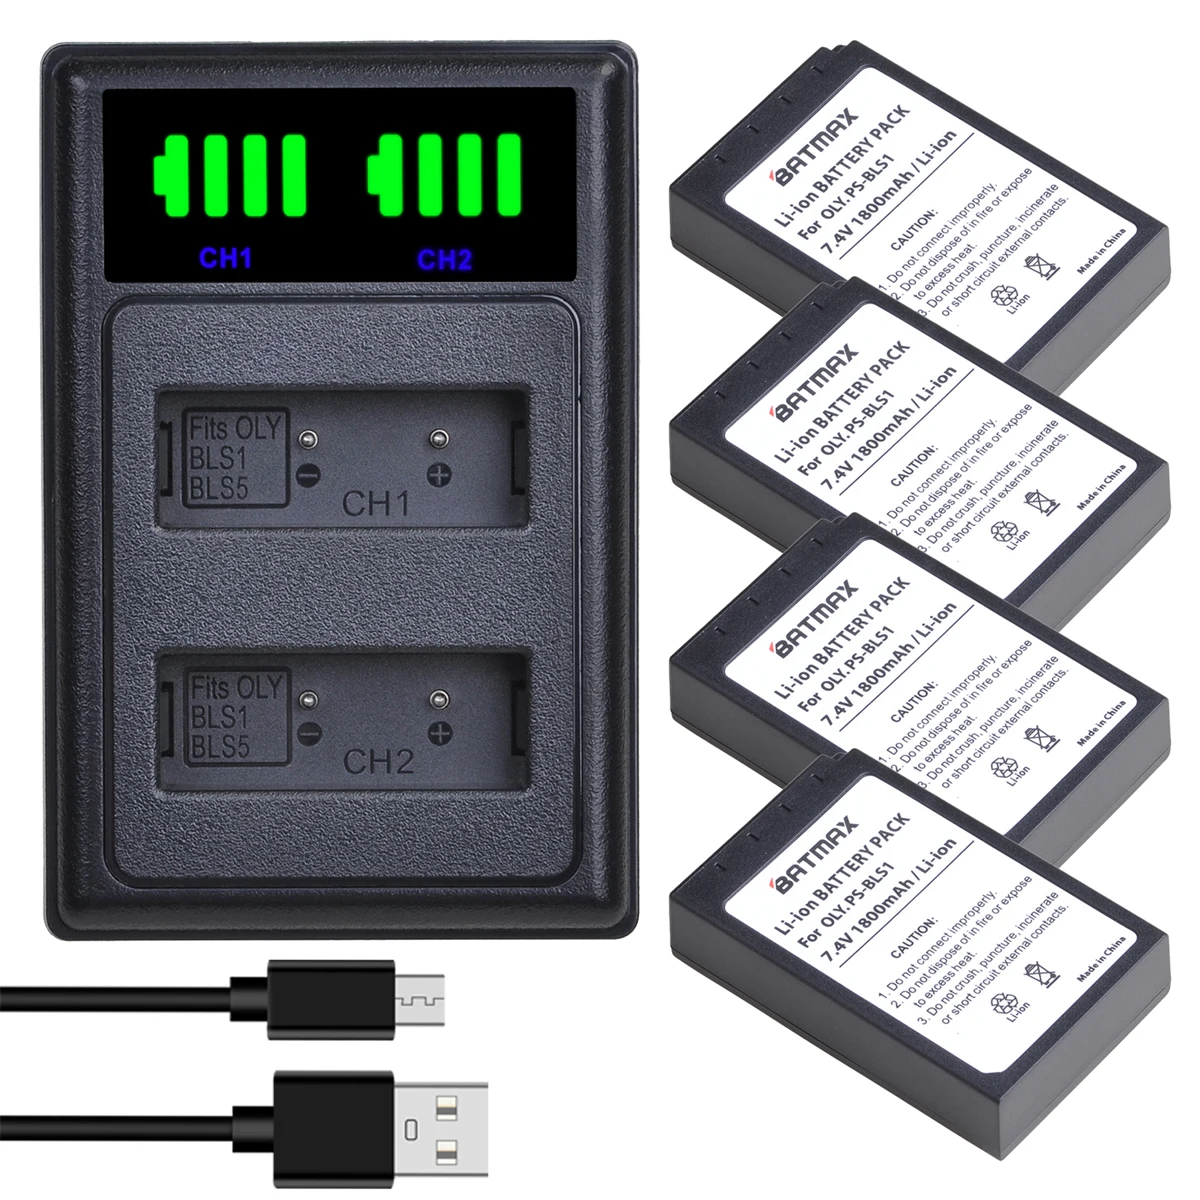 

Batmax PS-BLS1 BLS1 Battery+LED Dual USB Charger for Olympus E-PL1 E400 E410 E420 E450 E620 E-P1 E-P2 E-P3 E-PL3 Battery